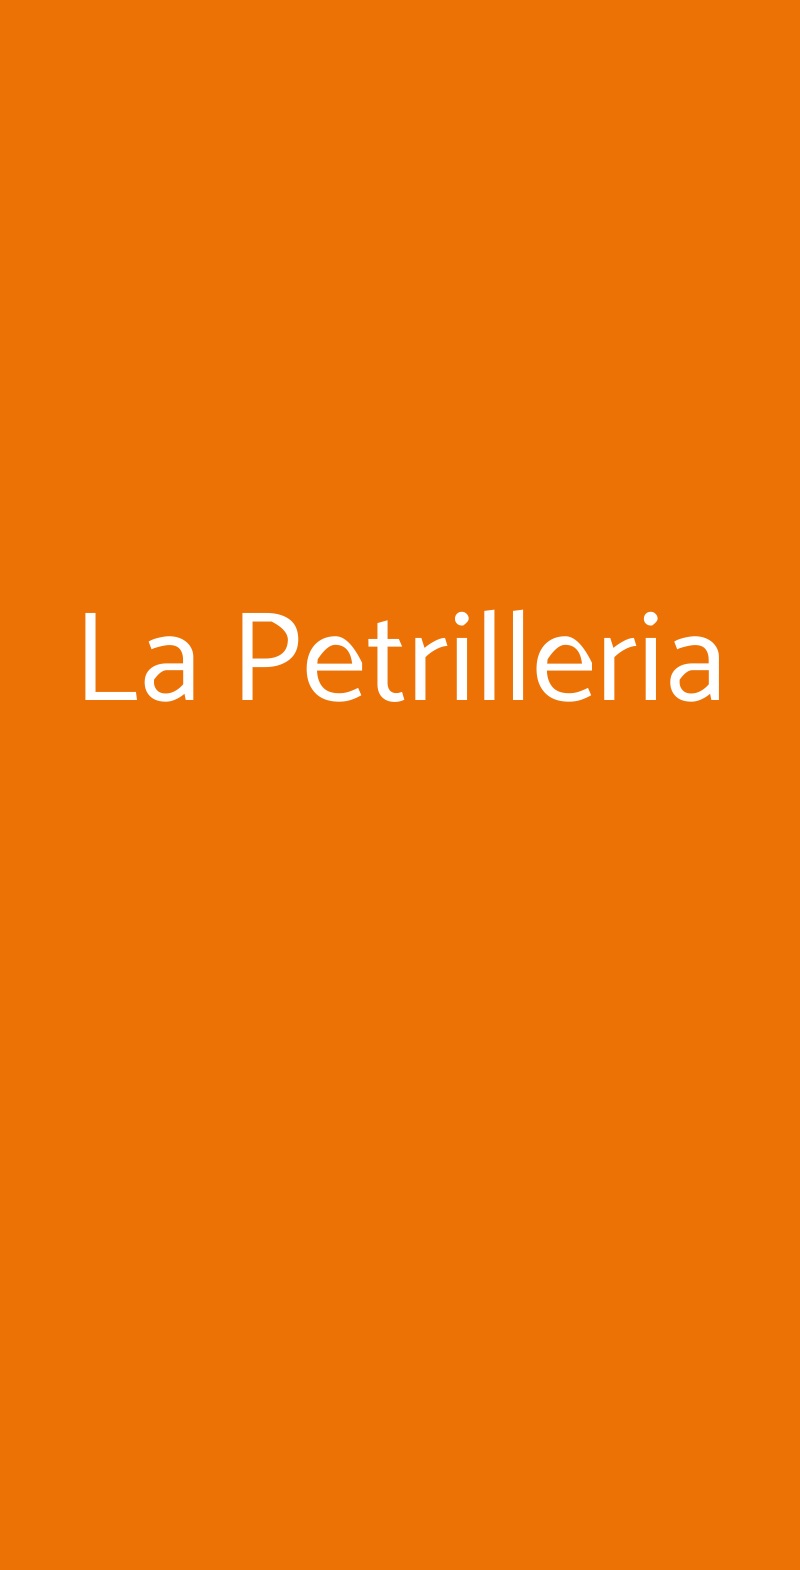 La Petrilleria Roma menù 1 pagina